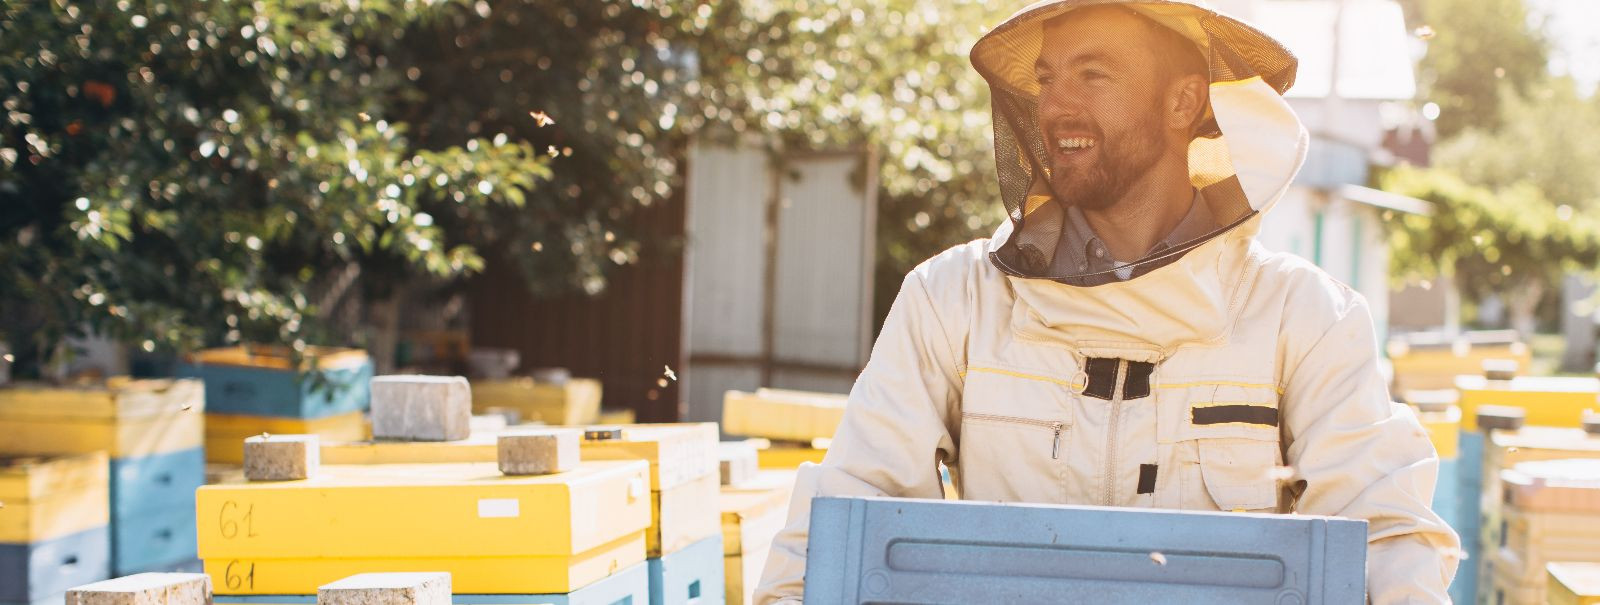 Jätkusuutlik mesindus on lähenemine, mis rõhutab mesilaste tervist ja heaolu, toodetud mee kvaliteeti ning üldist mõju keskkonnale. See on praktika, mis tagab m